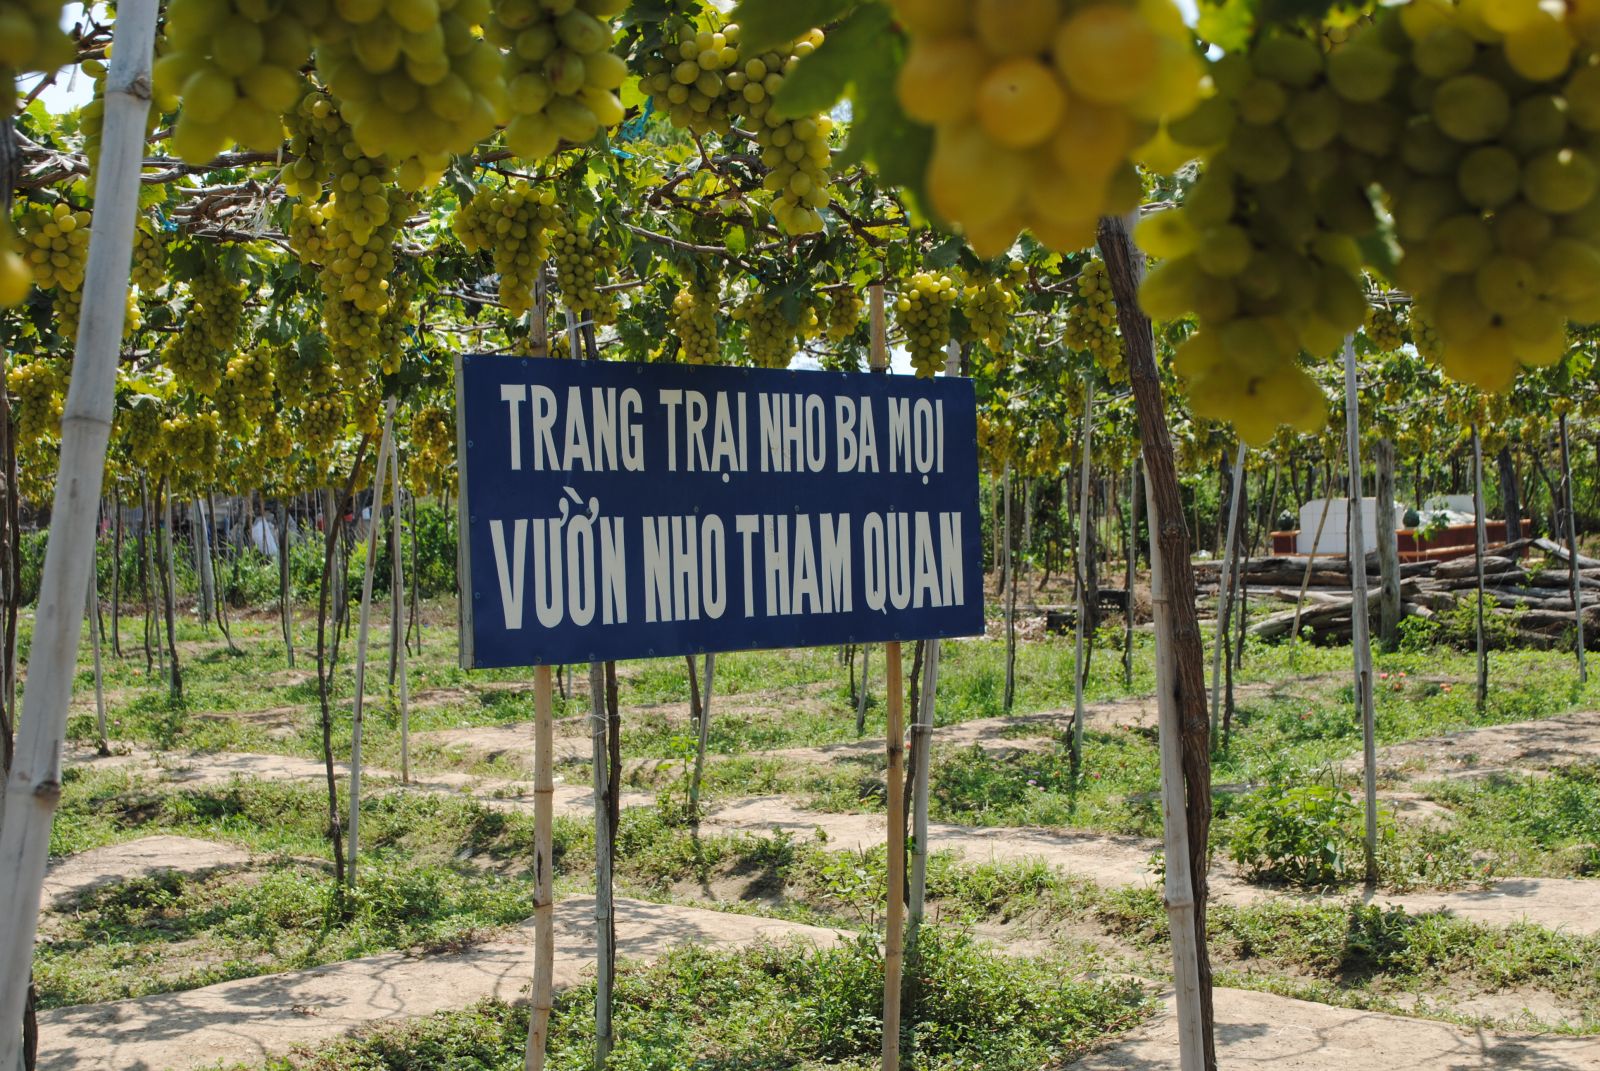 Thịnh hành tour du lịch nông nghiệp ở Ninh Thuận | Tạp chí Kinh tế và Dự báo